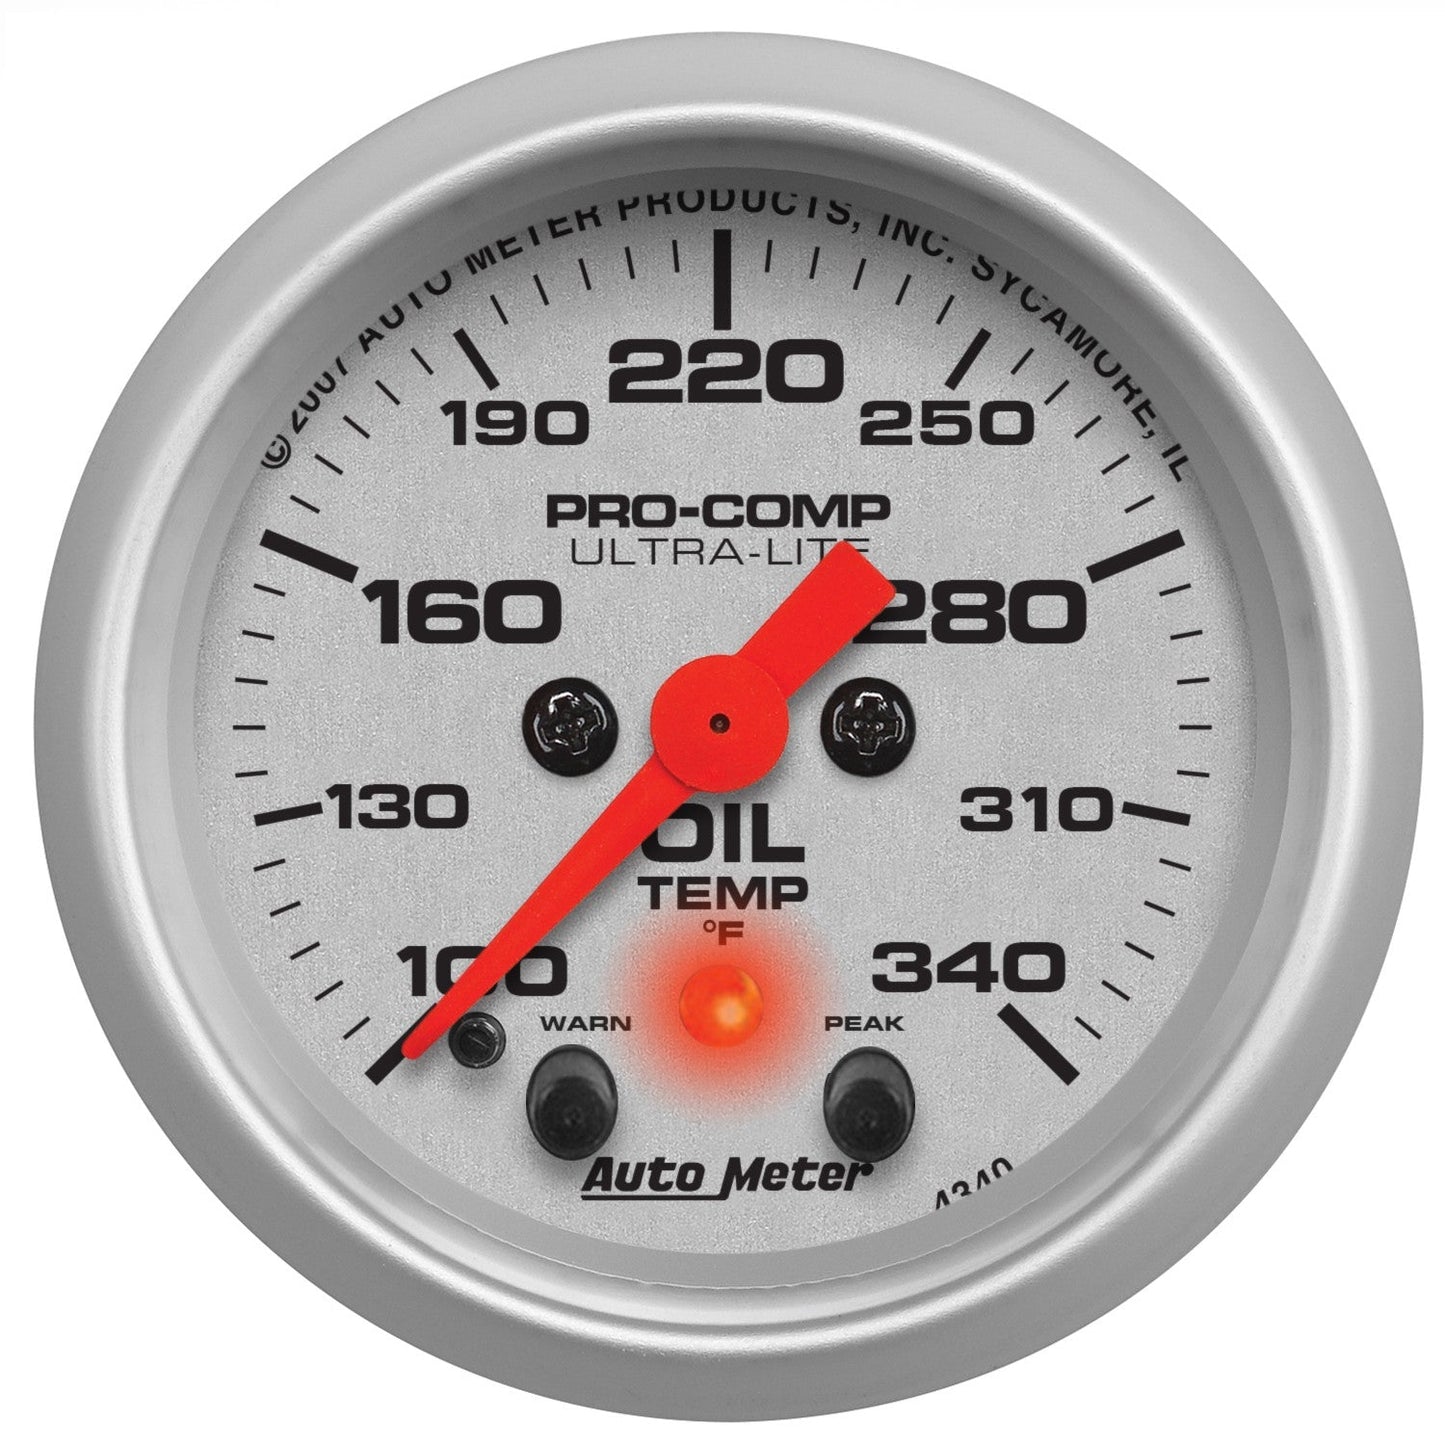 AutoMeter - TEMPERATURA DEL ACEITE DE 2-1/16", 100-340 °F, MOTOR PASO A PASO, ULTRA-LITE (4340)